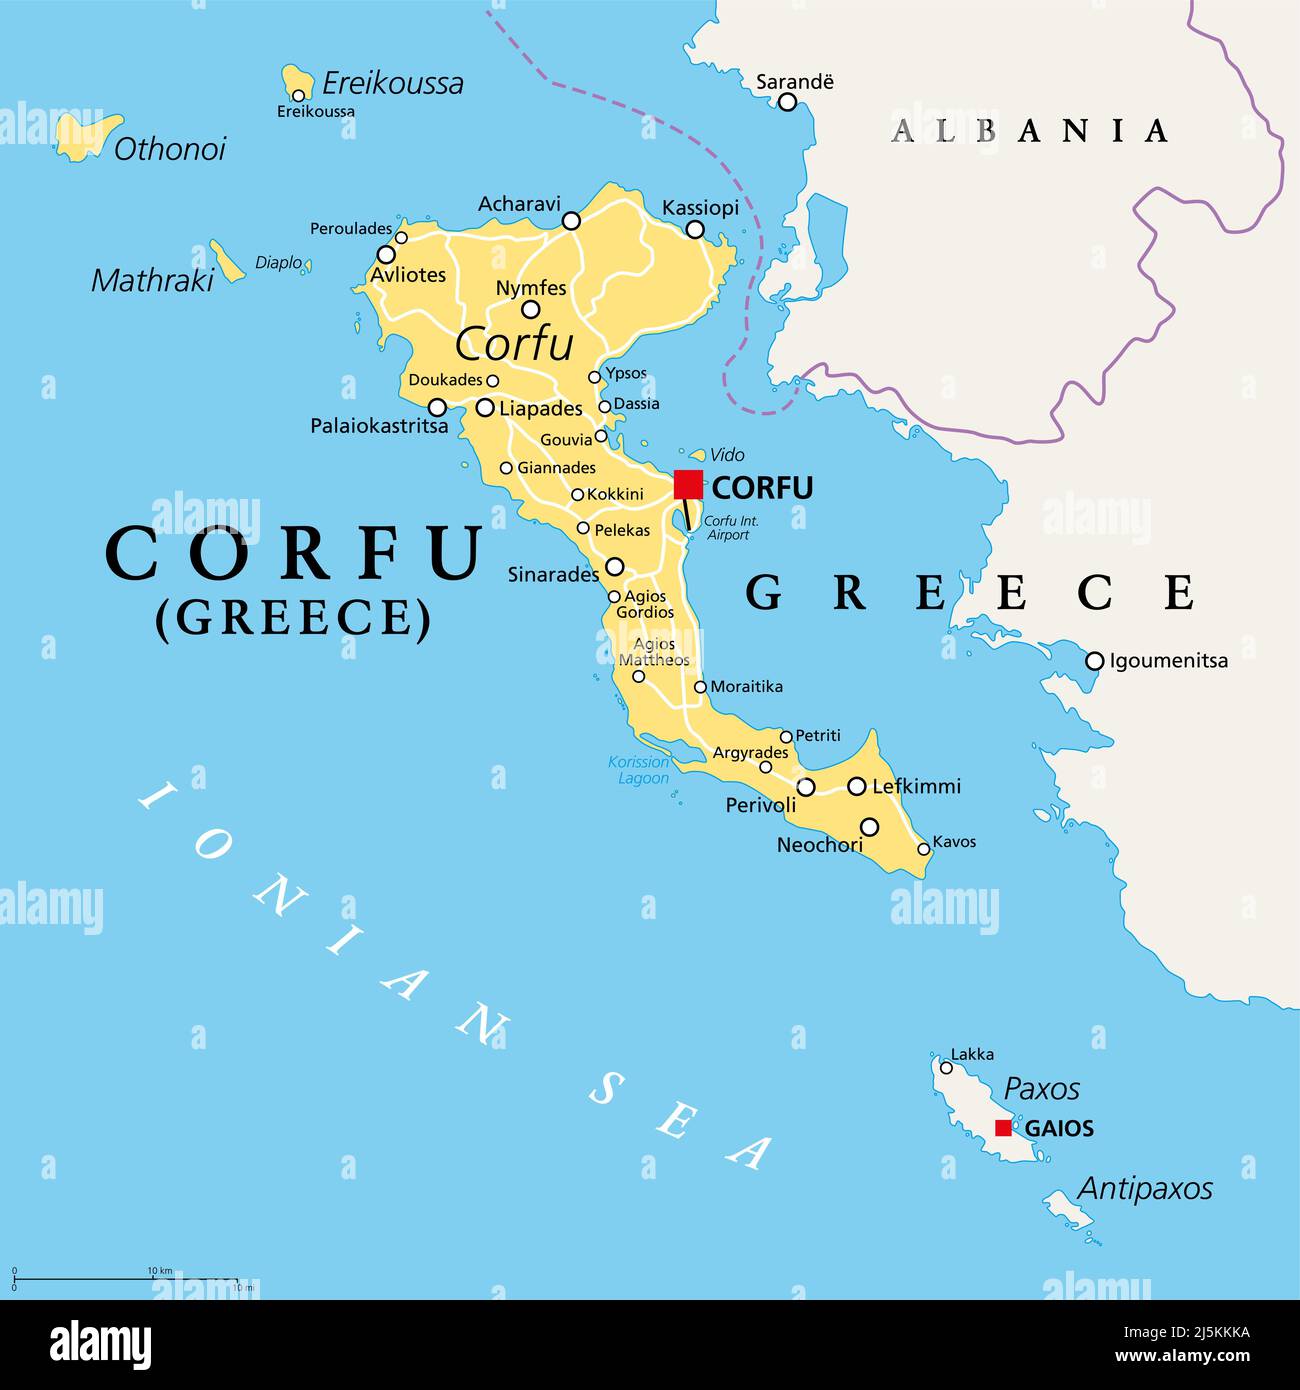 Corfou, île de Grèce, carte politique. Également connu sous le nom de Kerkyra, une île grecque dans la mer Ionienne et une partie des îles Ioniennes. Banque D'Images